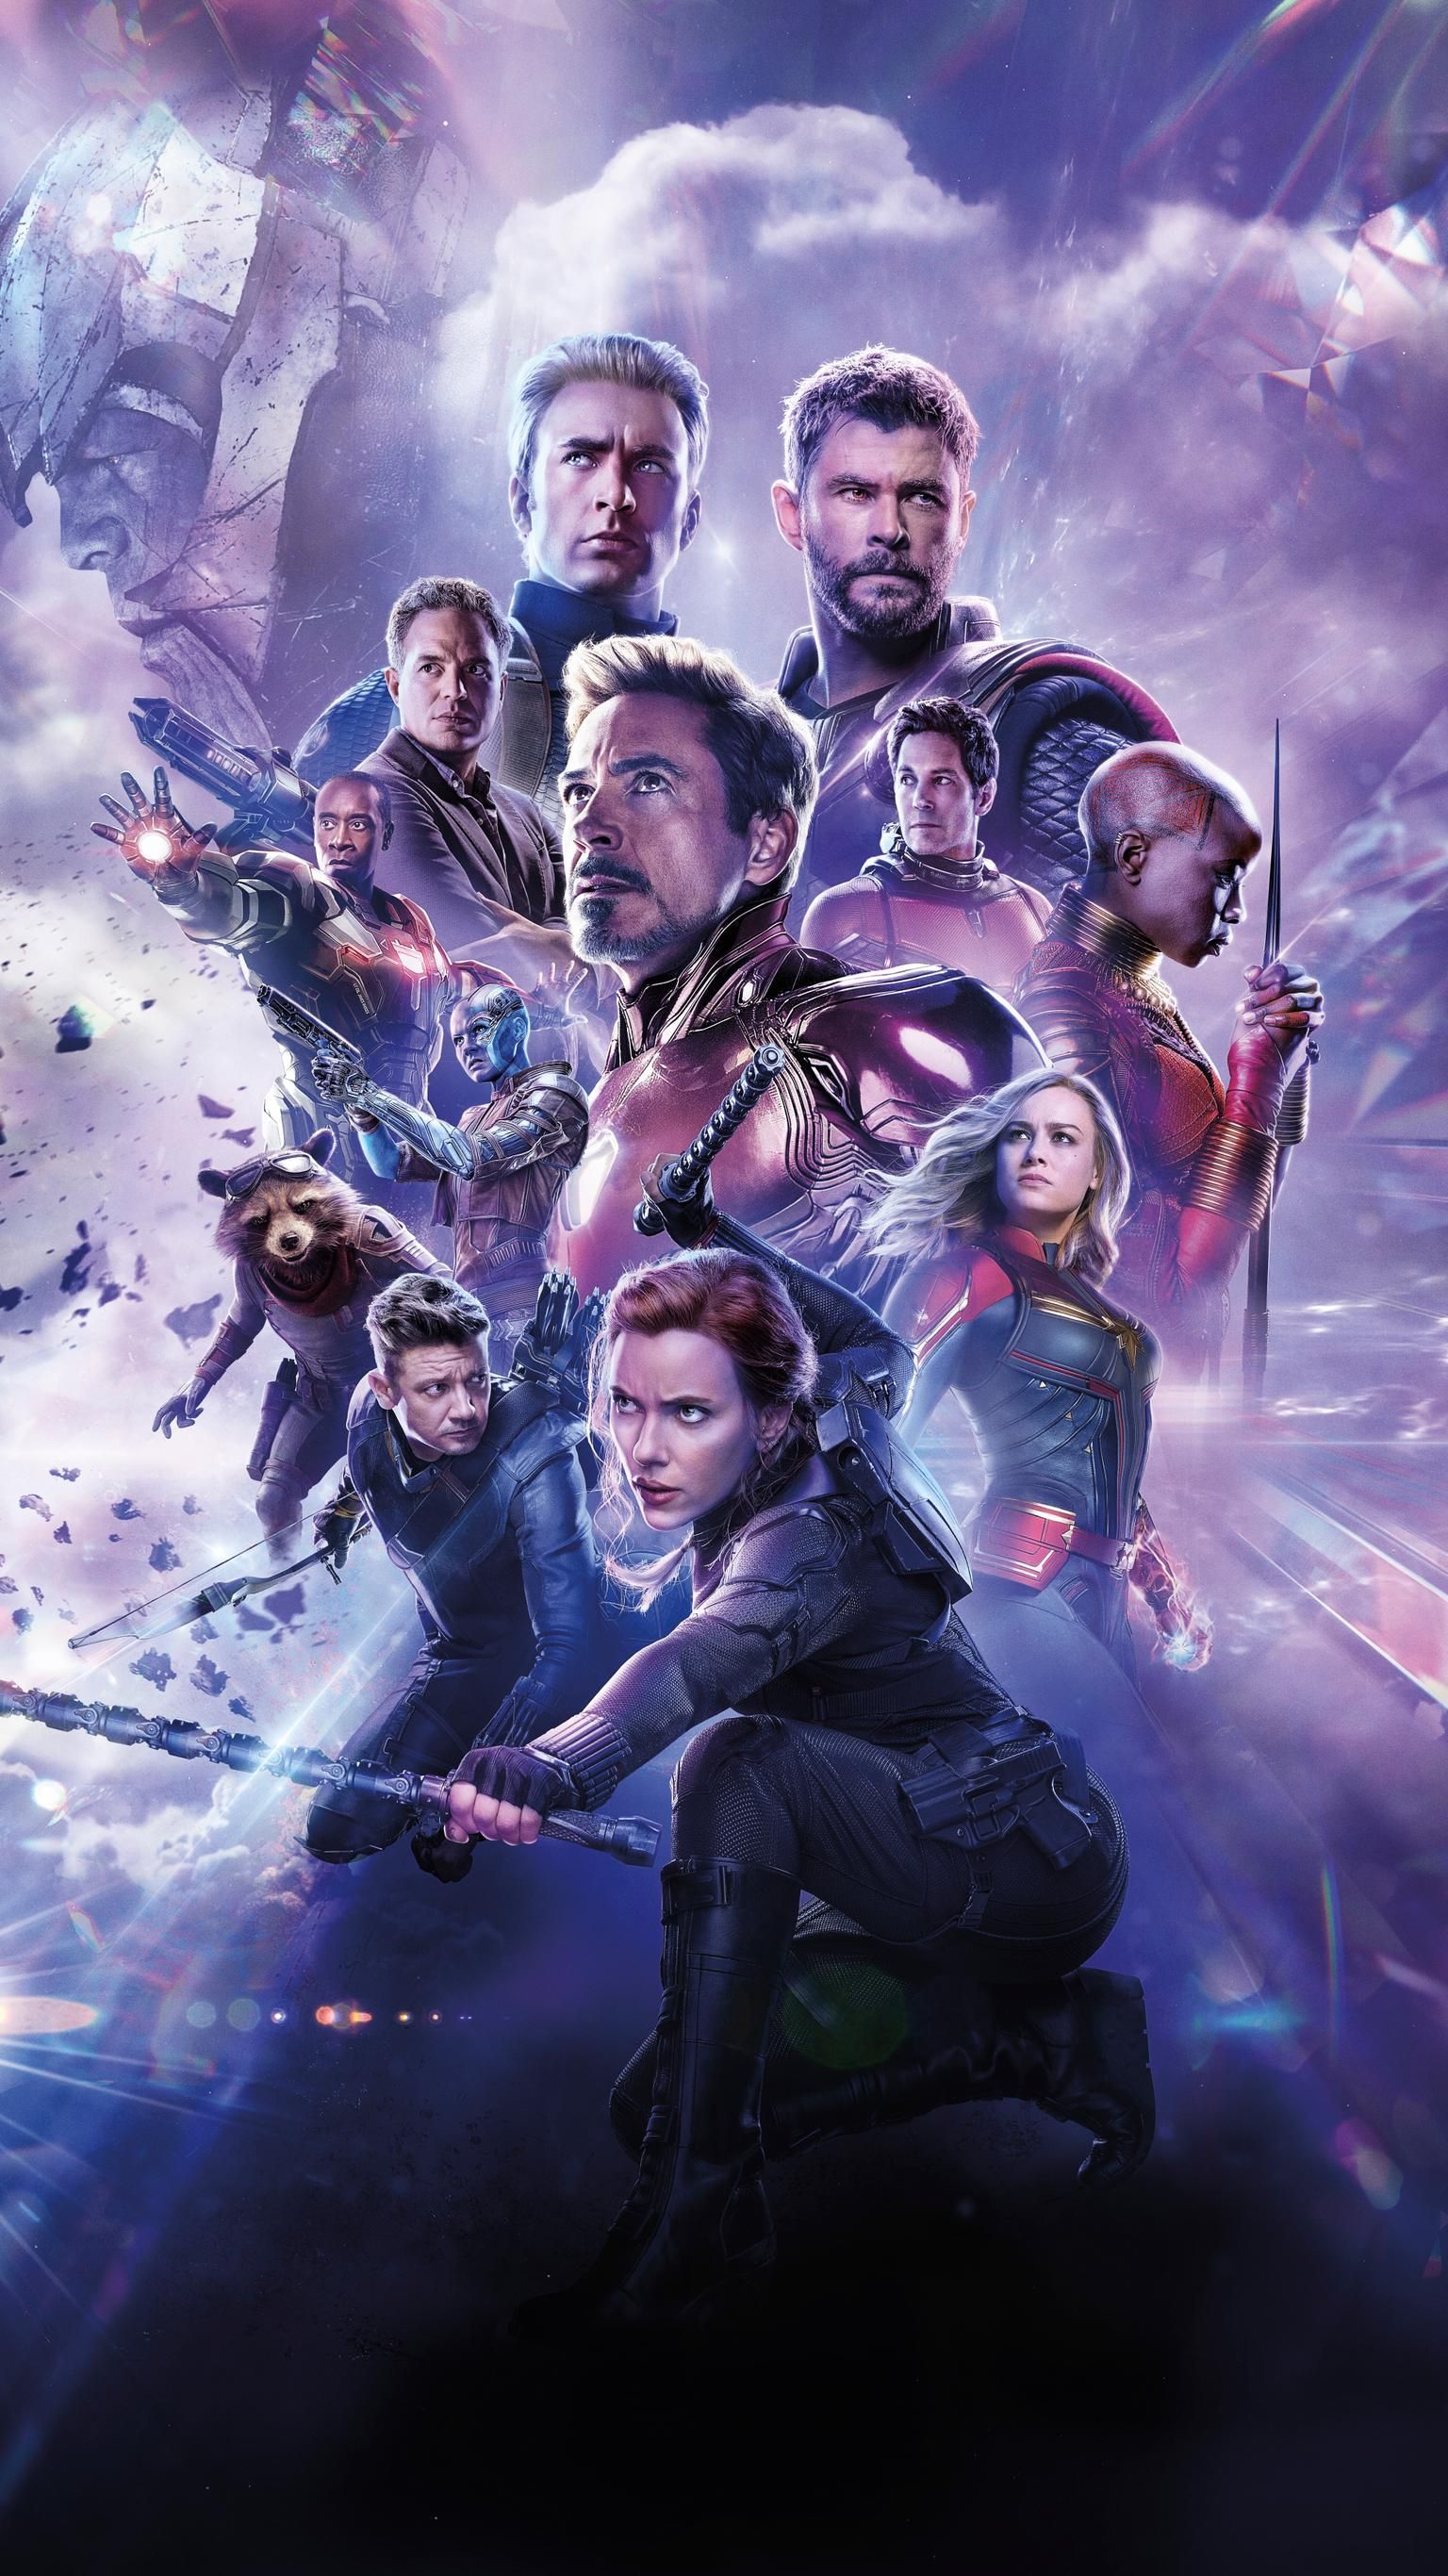 Avengers: Endgame (2019) Phone Wallpaper. Moviemania #avengersfanart. Marvel background, Marvel comics wallpaper, Marvel superhero posters